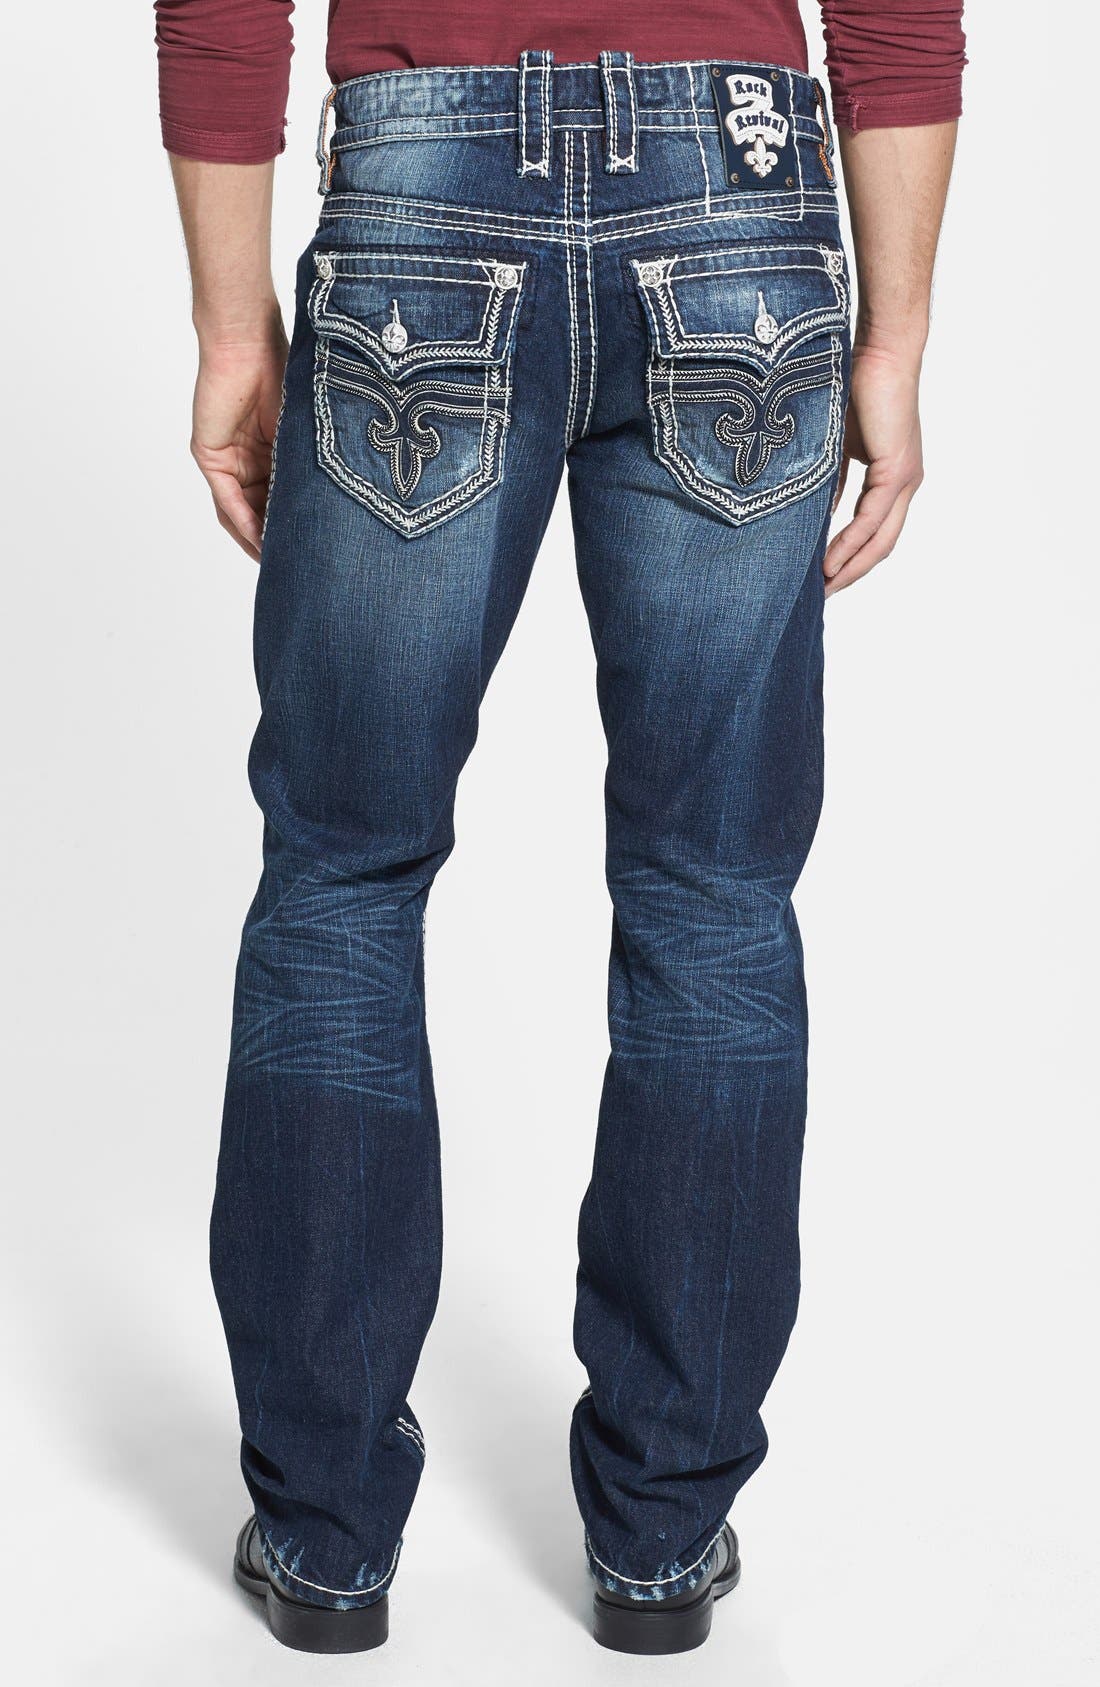 levis jeans sale mens